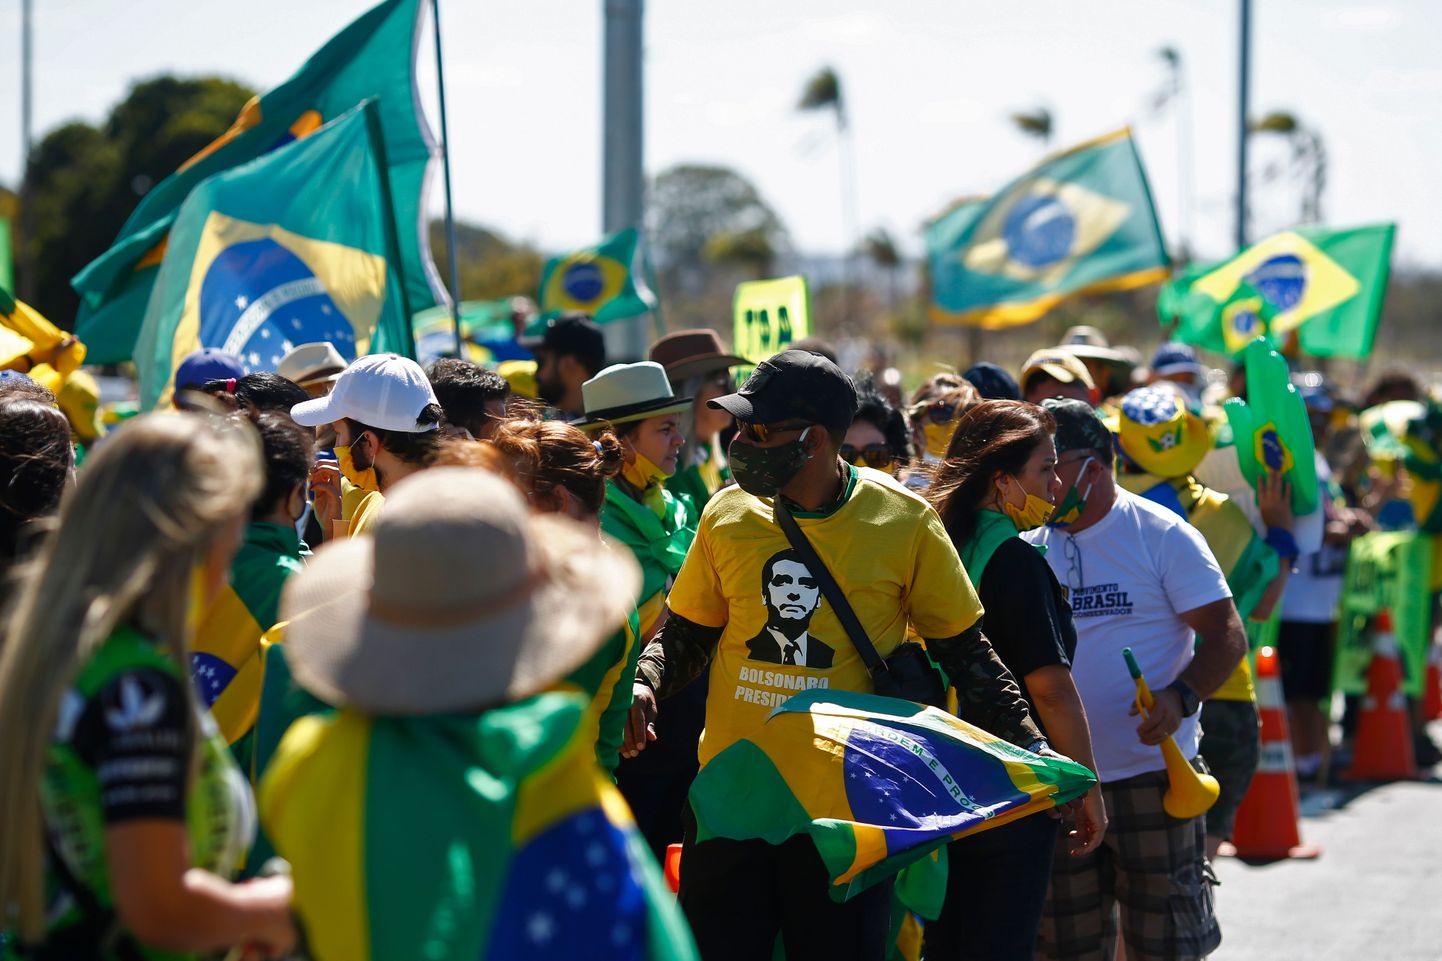 Brasiilia persidendi Jair Bolsonaro toetajad protestimas kogunemispiirangute vastu.